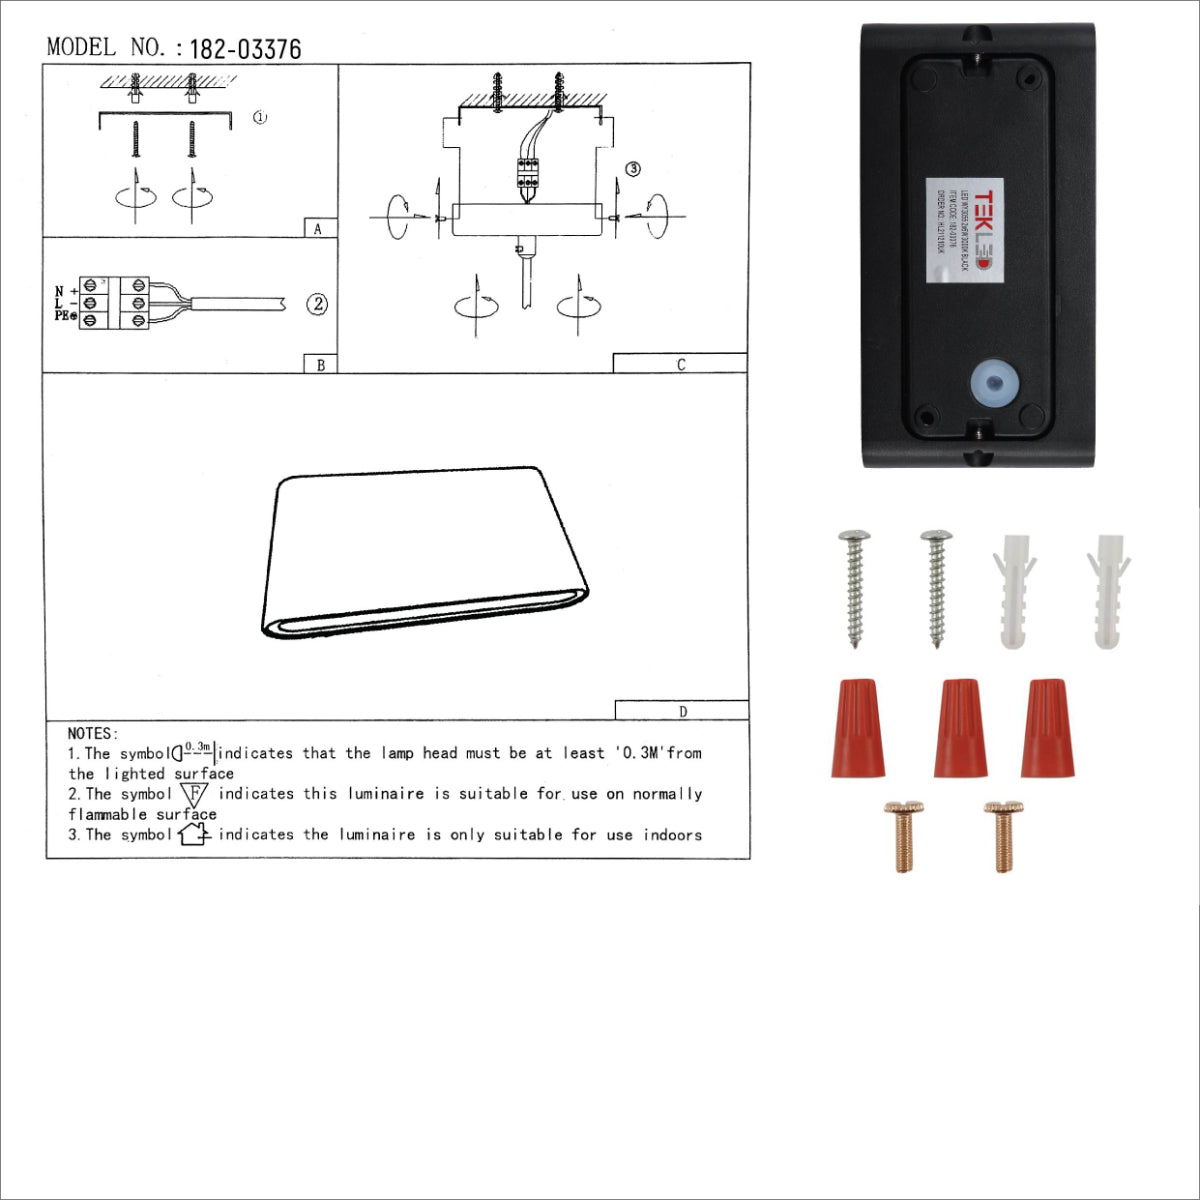 User manual for Black Slim Cuboid Up Down Outdoor Modern LED Wall Light | TEKLED 182-03376